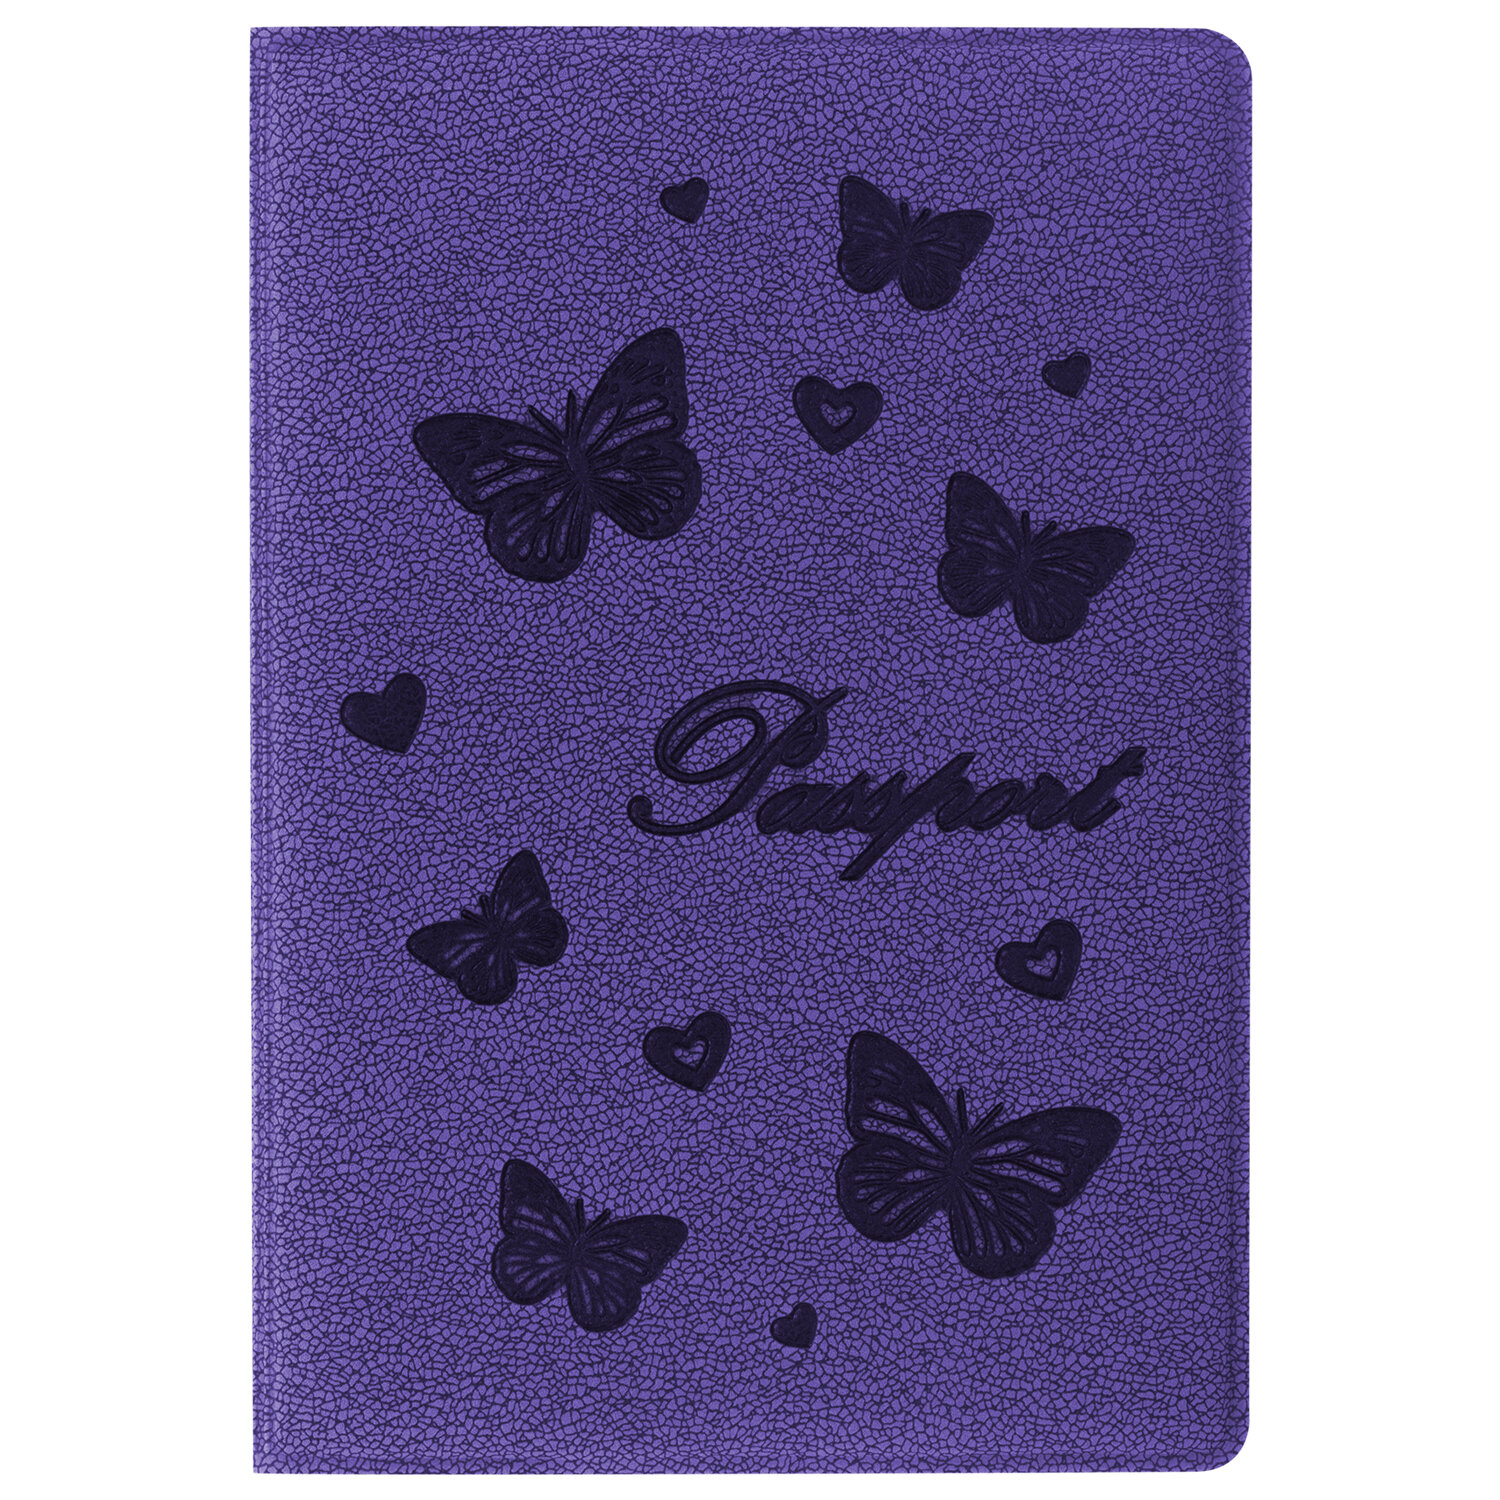 Обложка для паспорта Staff бархатный полиуретан, с бабочками, фиолетовый